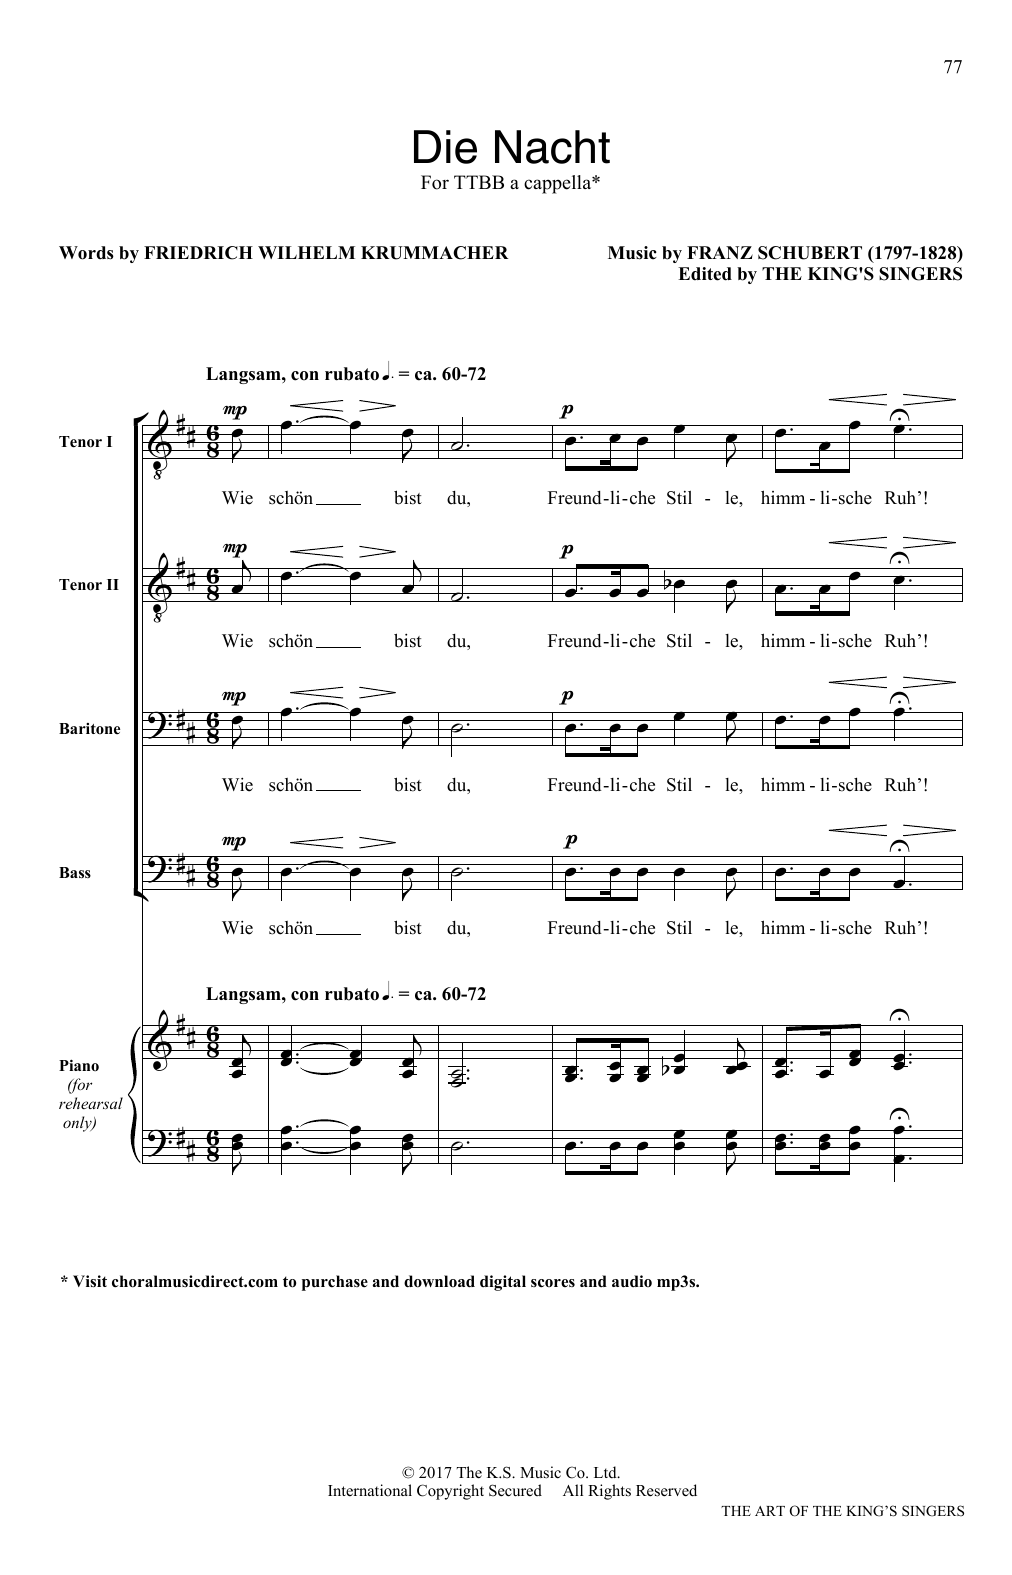 Download Franz Schubert Die Nacht Sheet Music